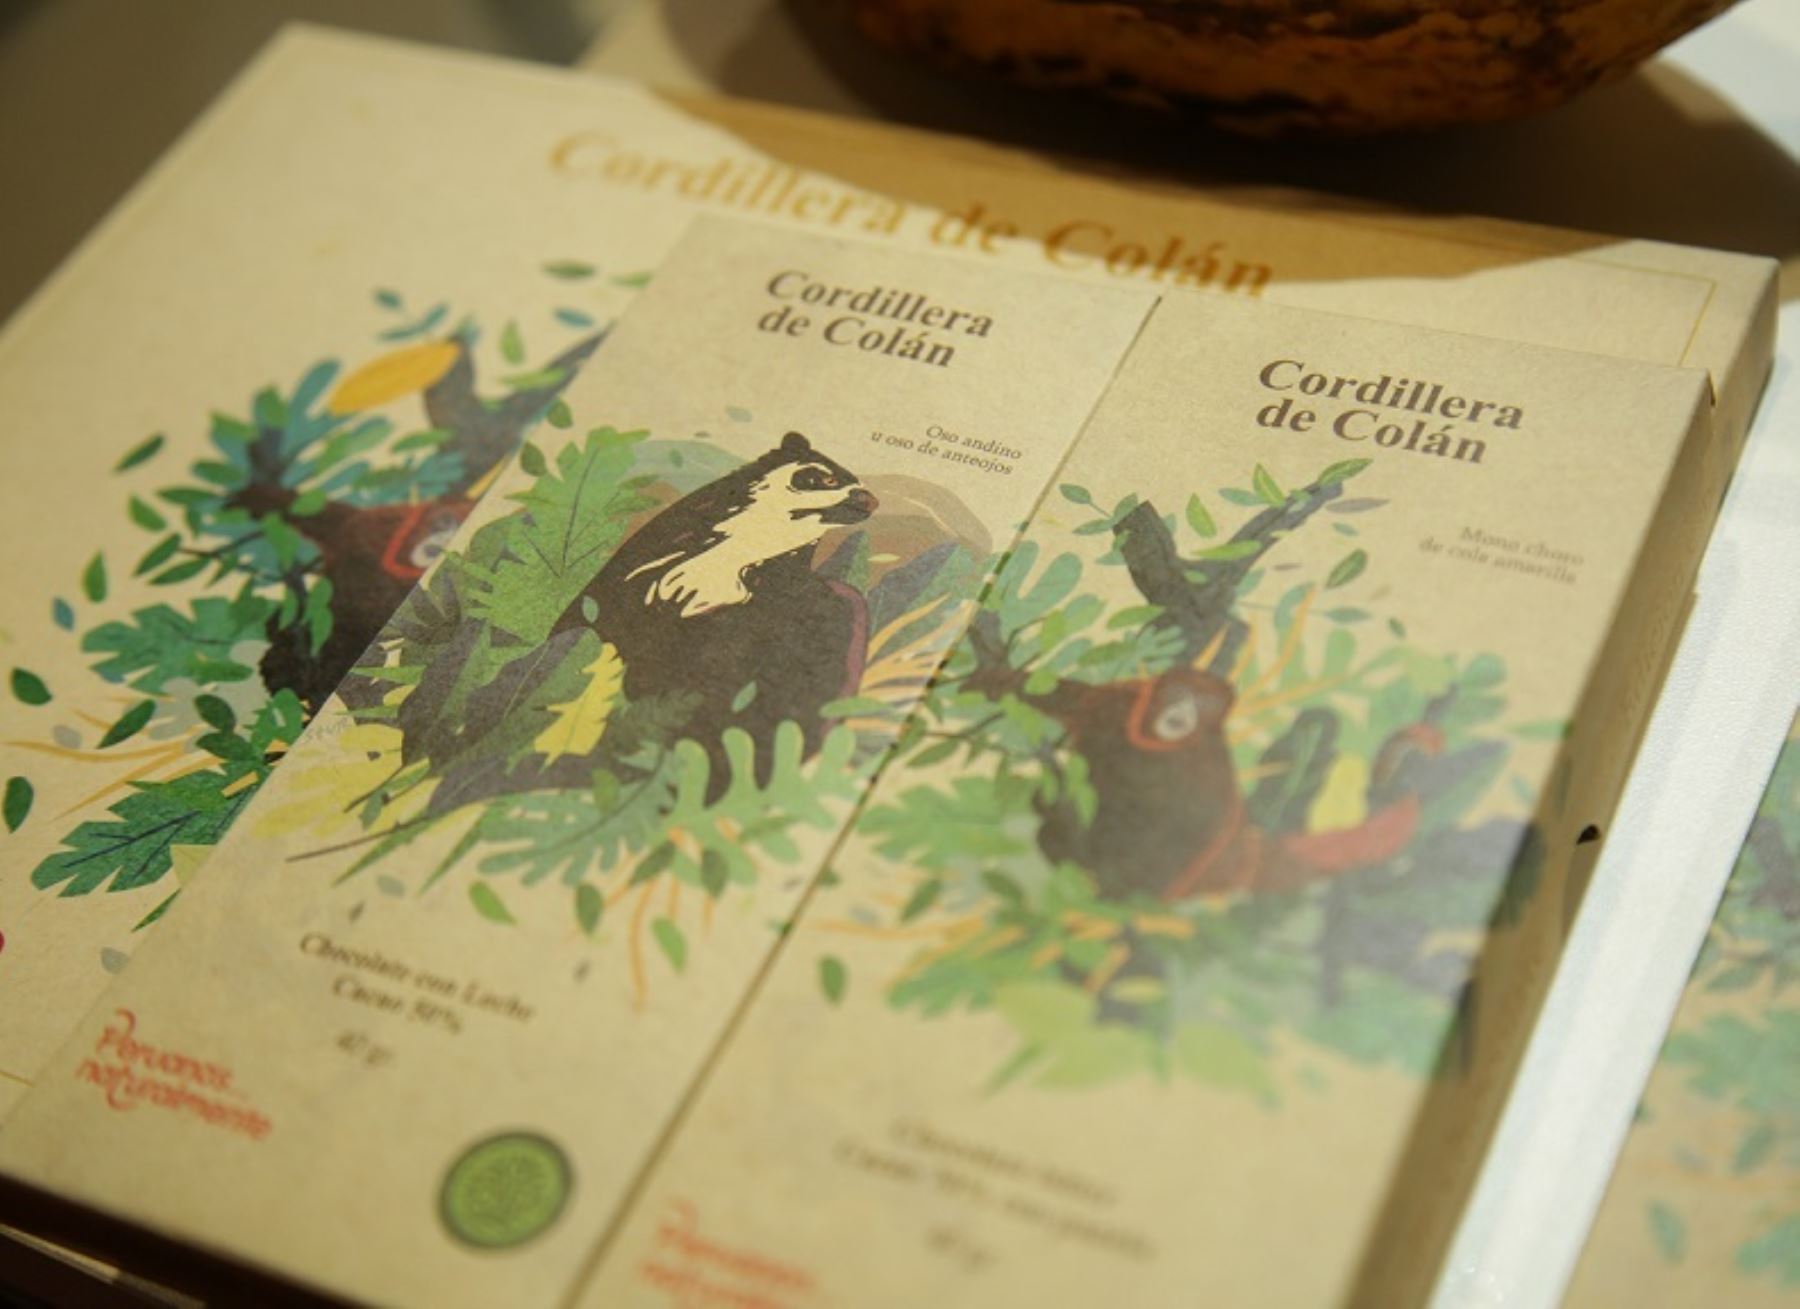 Sernanp presentó chocolates que llevan los nombres de las especies que se encuentran en peligro y viven en el Santuario Nacional Cordillera de Colán, en Amazonas.